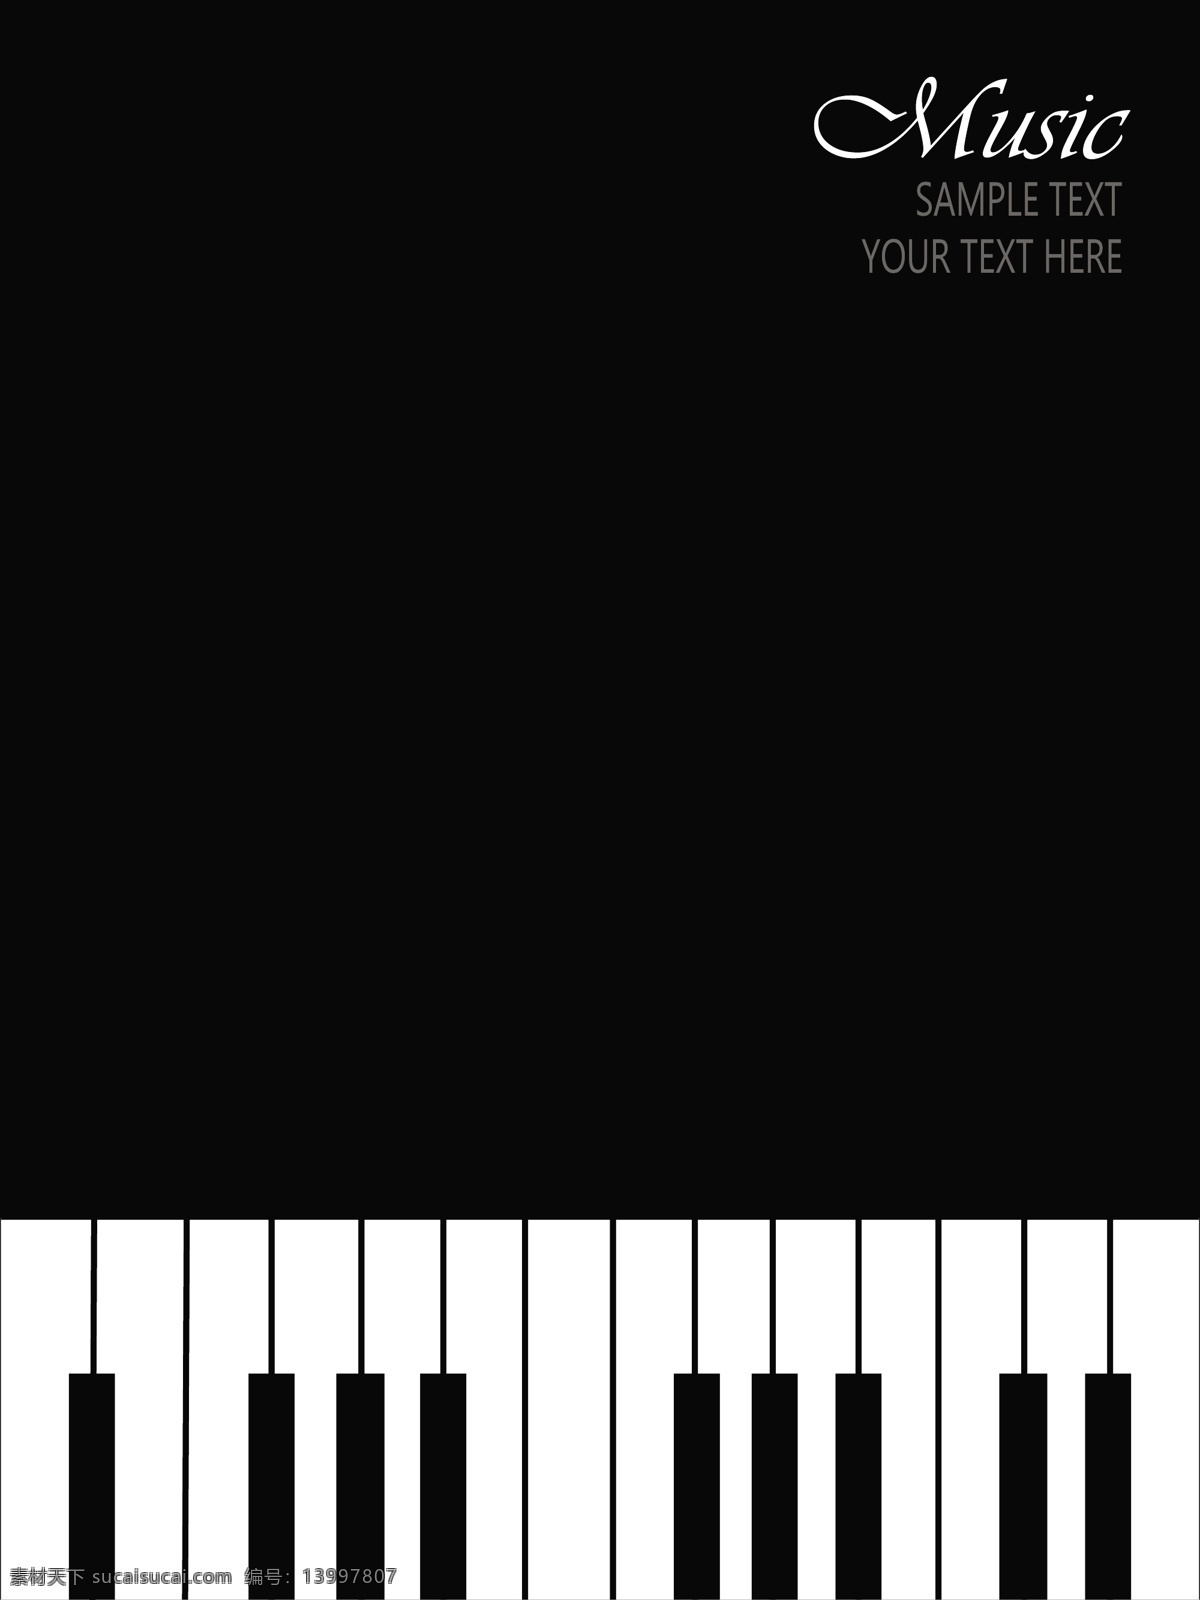 黑白 琴键 矢量 模板下载 音乐主题 黑白琴键 乐器 背景素材 底纹背景 影音娱乐 生活百科 矢量素材 黑色